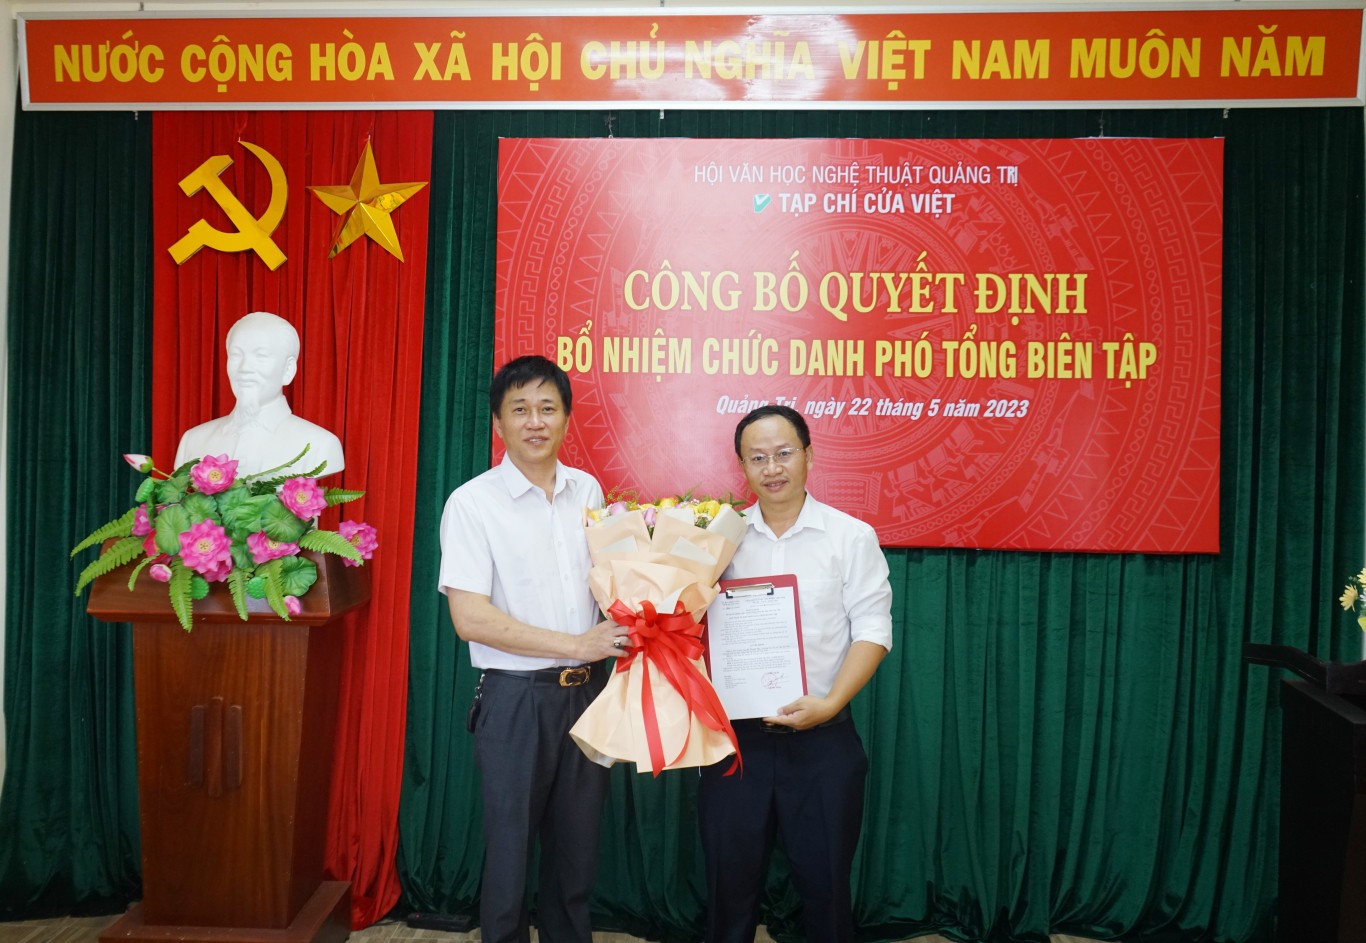 Phó Giám đốc Sở Nội vụ Lê Quang Vịnh trao quyết định bổ nhiệm chức danh Phó Tổng biên tập Tạp chí Cửa Việt cho ông Hồ Thanh Thọ